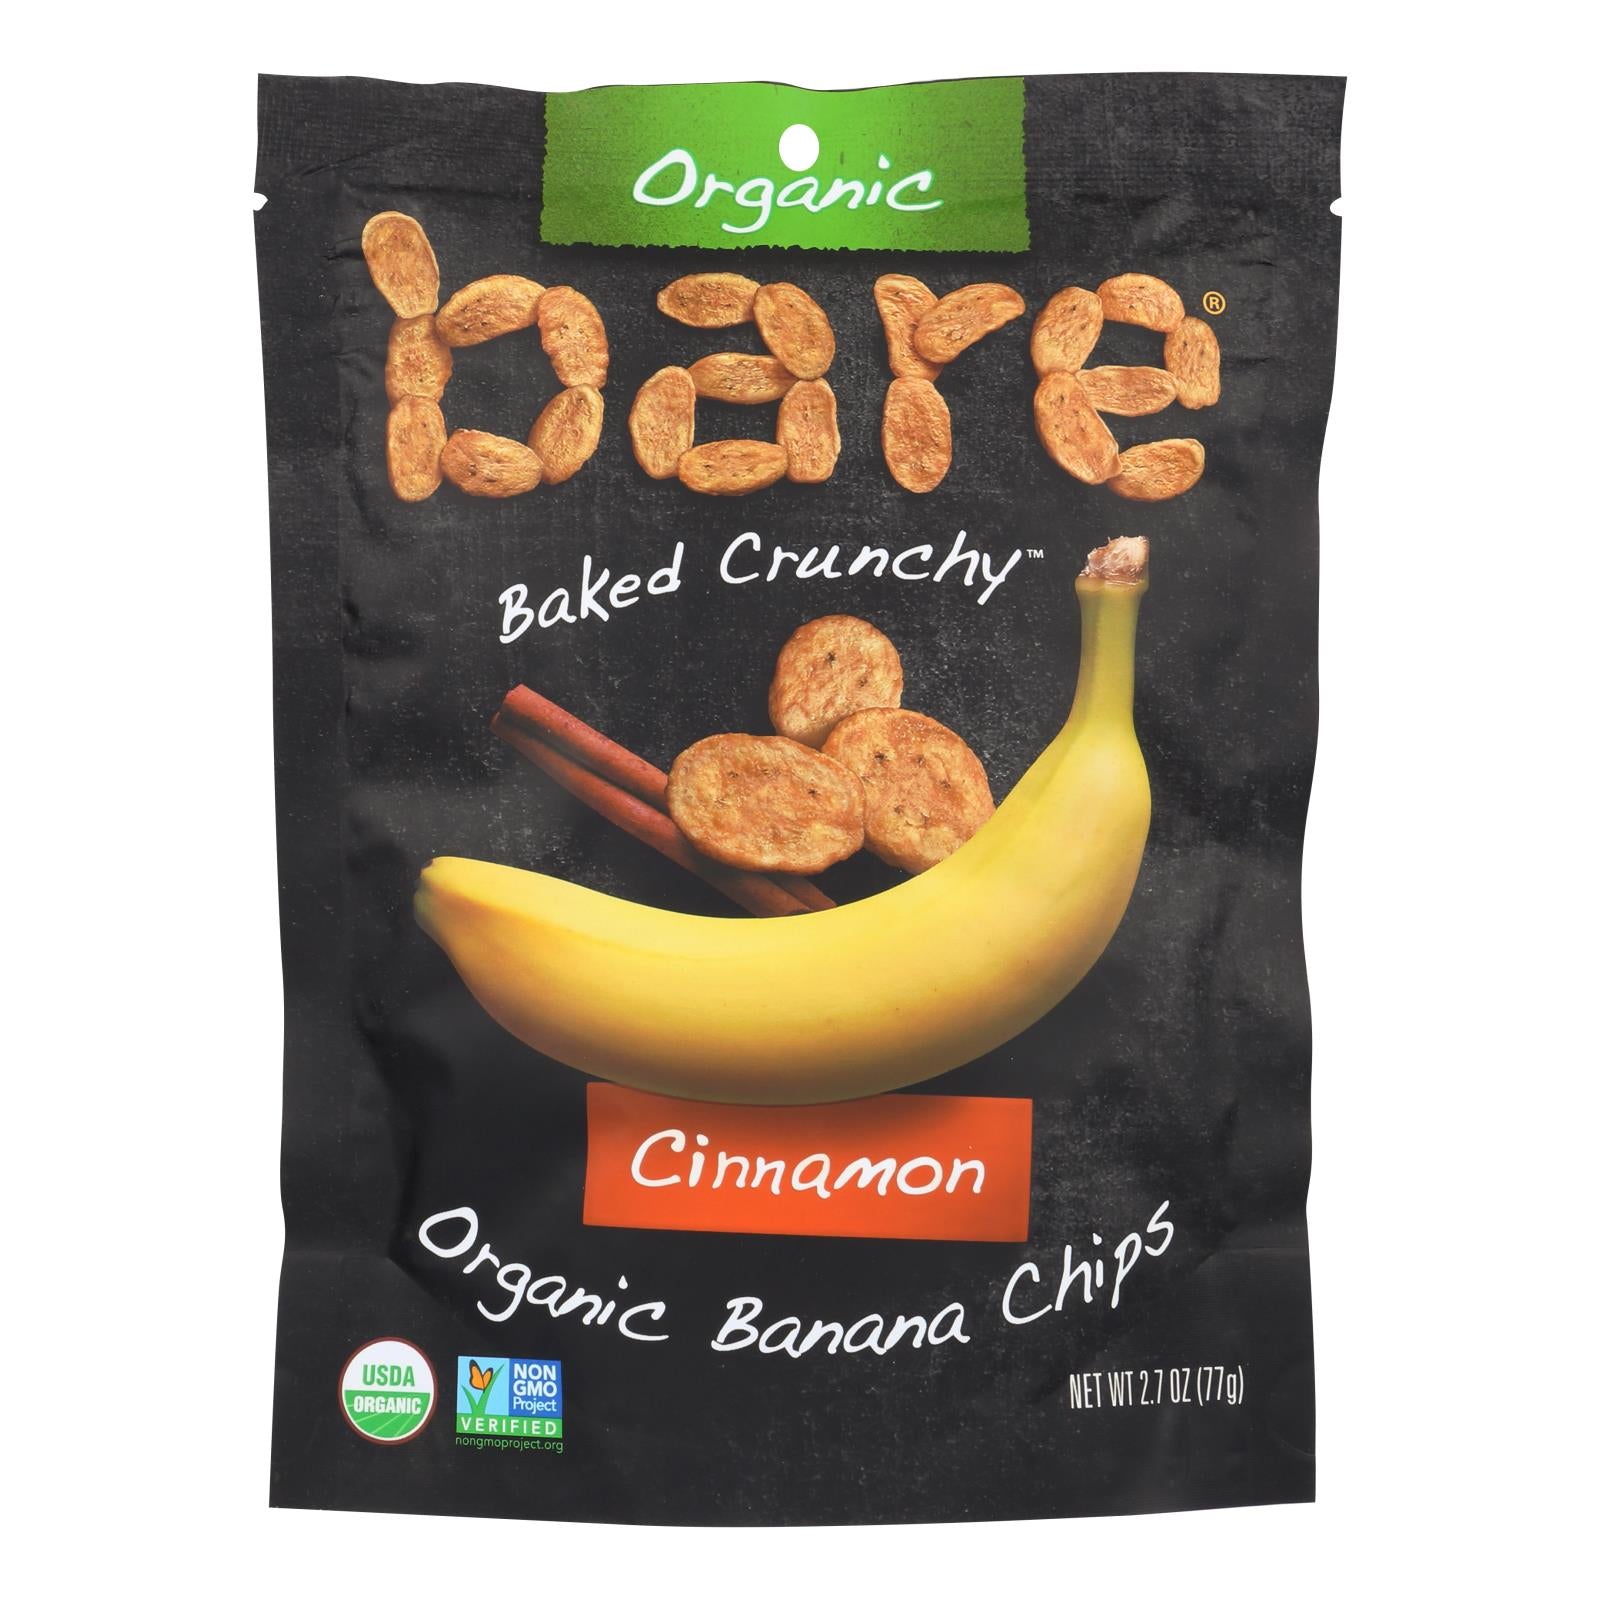 Bare Fruit, Bare Fruit Banana Chips - Cinnamon Banana - Case of 12 - 2.7 oz. (Pack of 12)